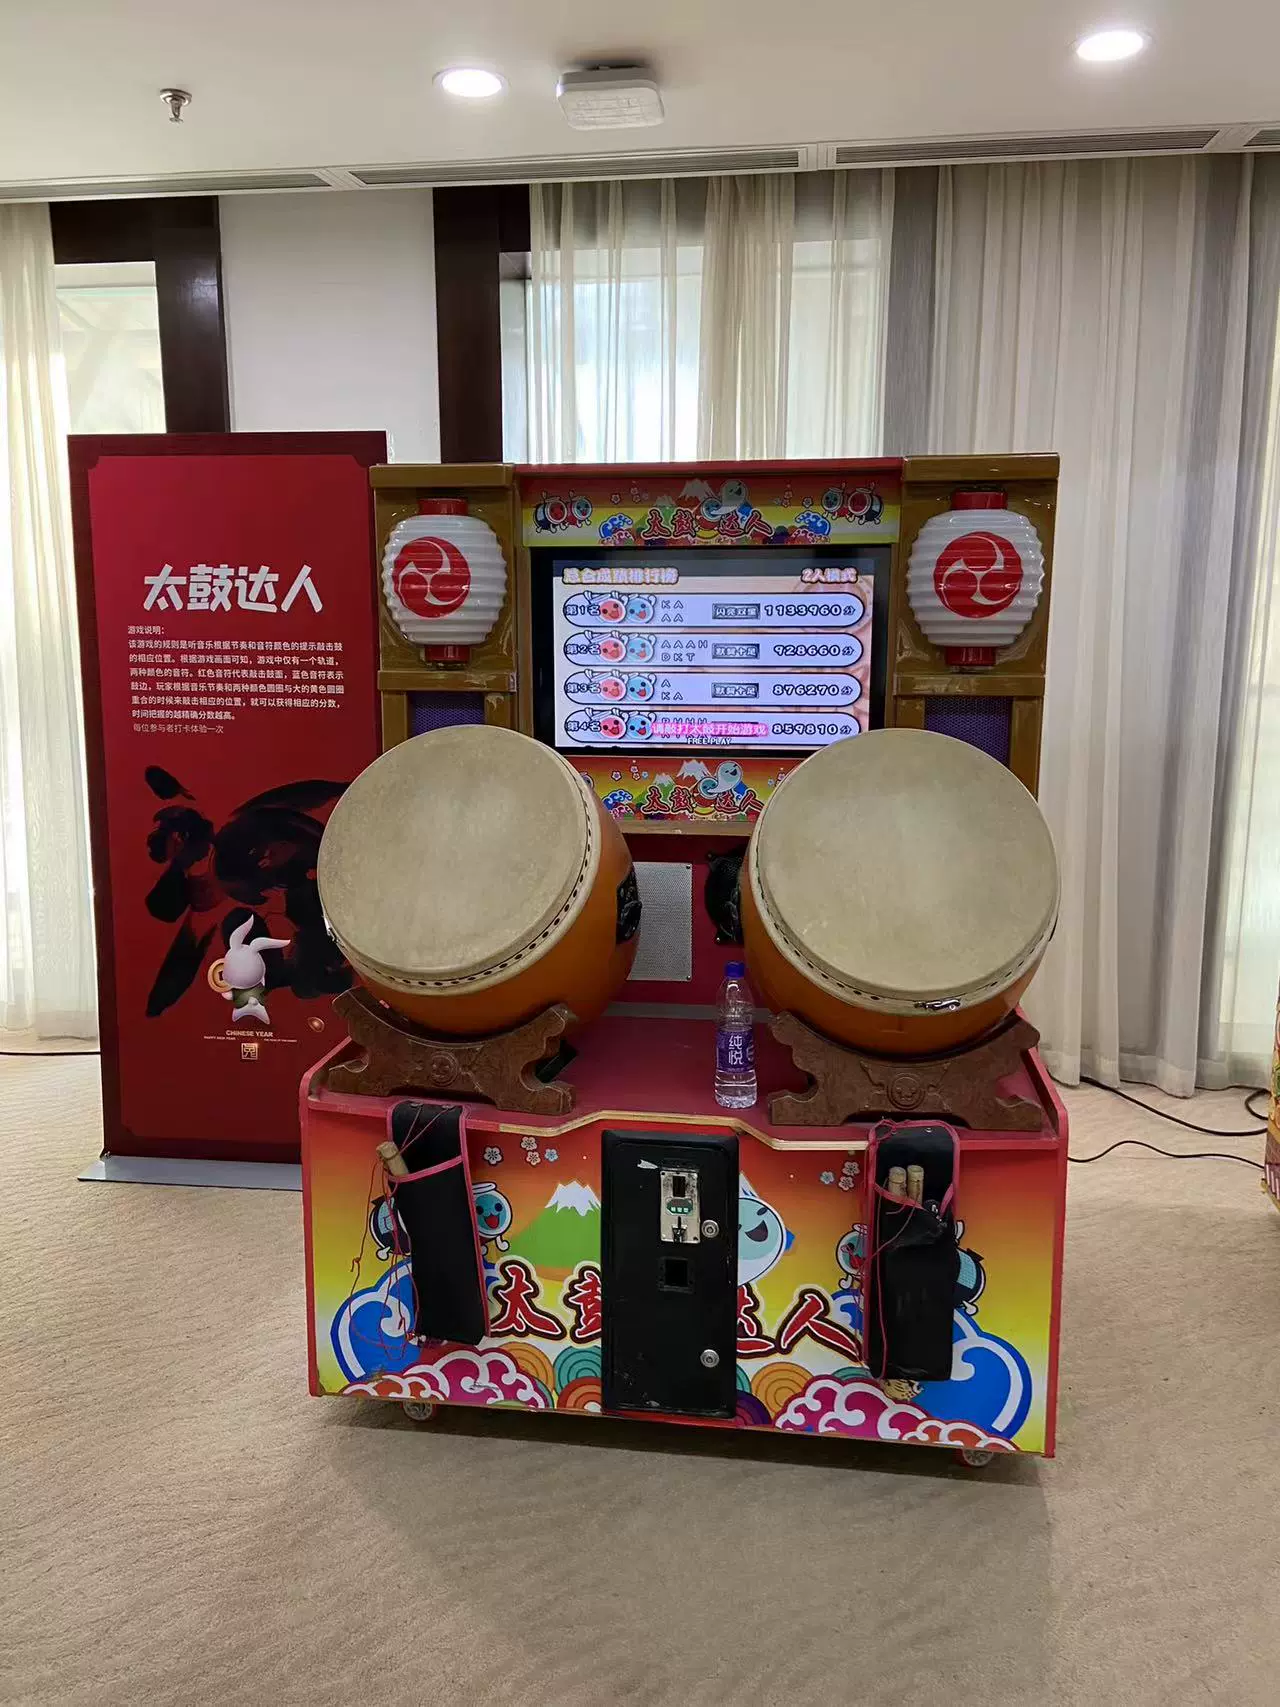 打鼓機大型電玩遊戲機太鼓達人12代兒童打鼓機青春鼓手音樂機租賃-Taobao